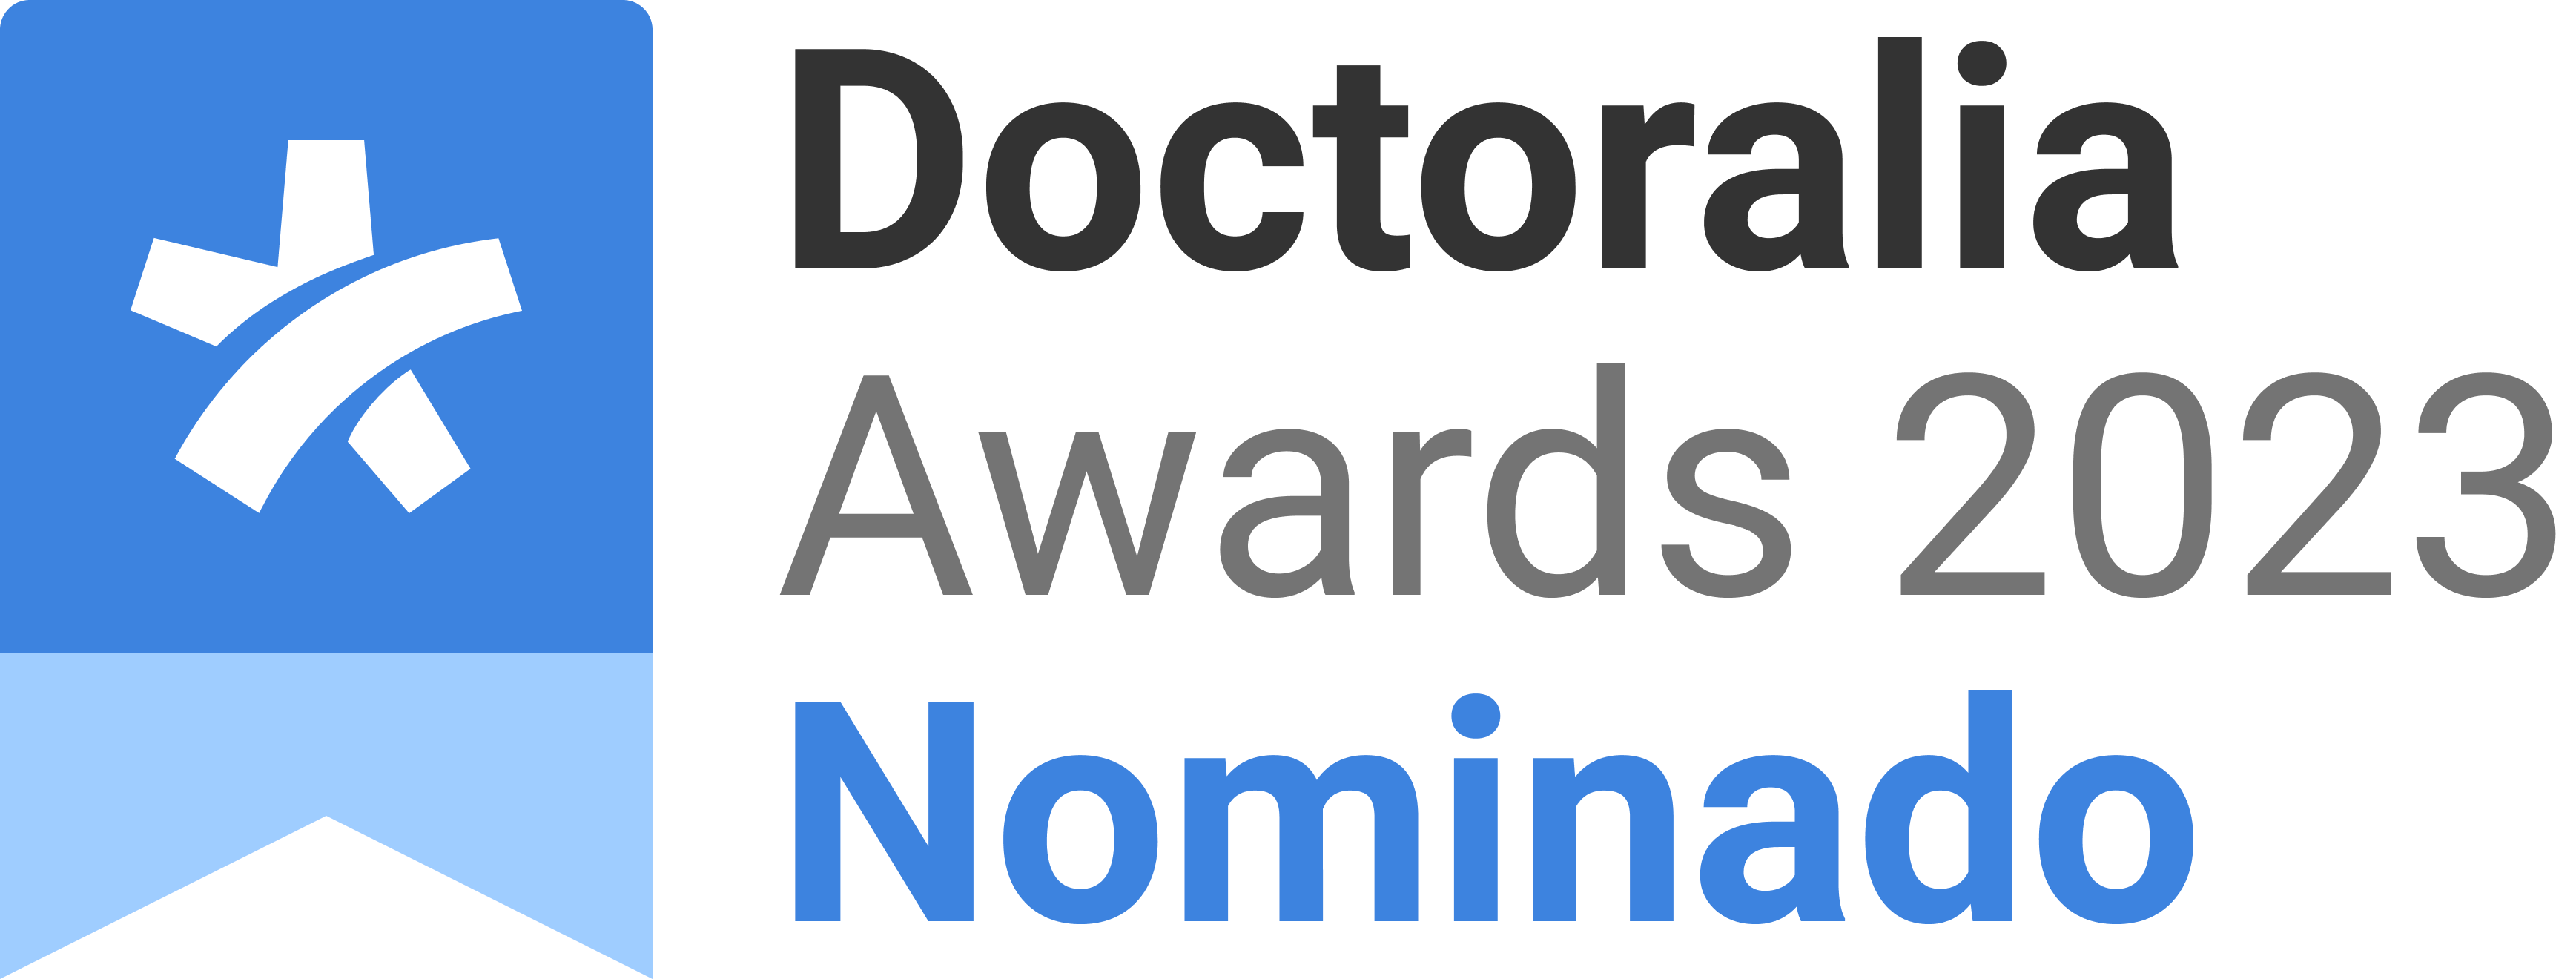 Doctoralia Awards 2022. Nominado